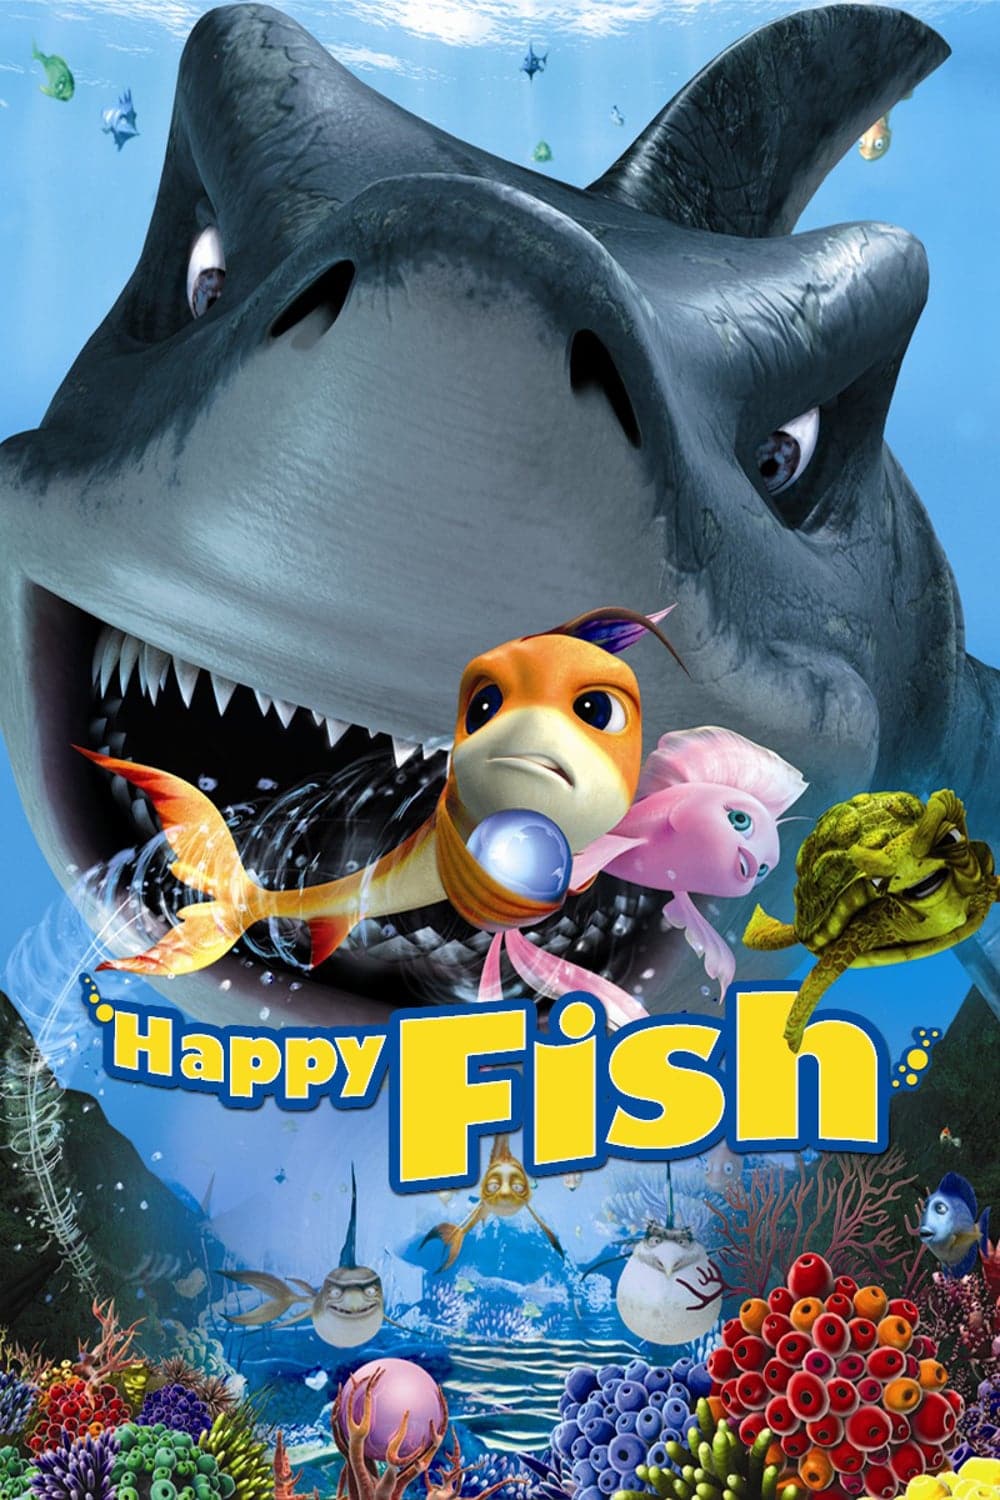 Plakat von "Happy Fish - Hai-Alarm und frische Fische"